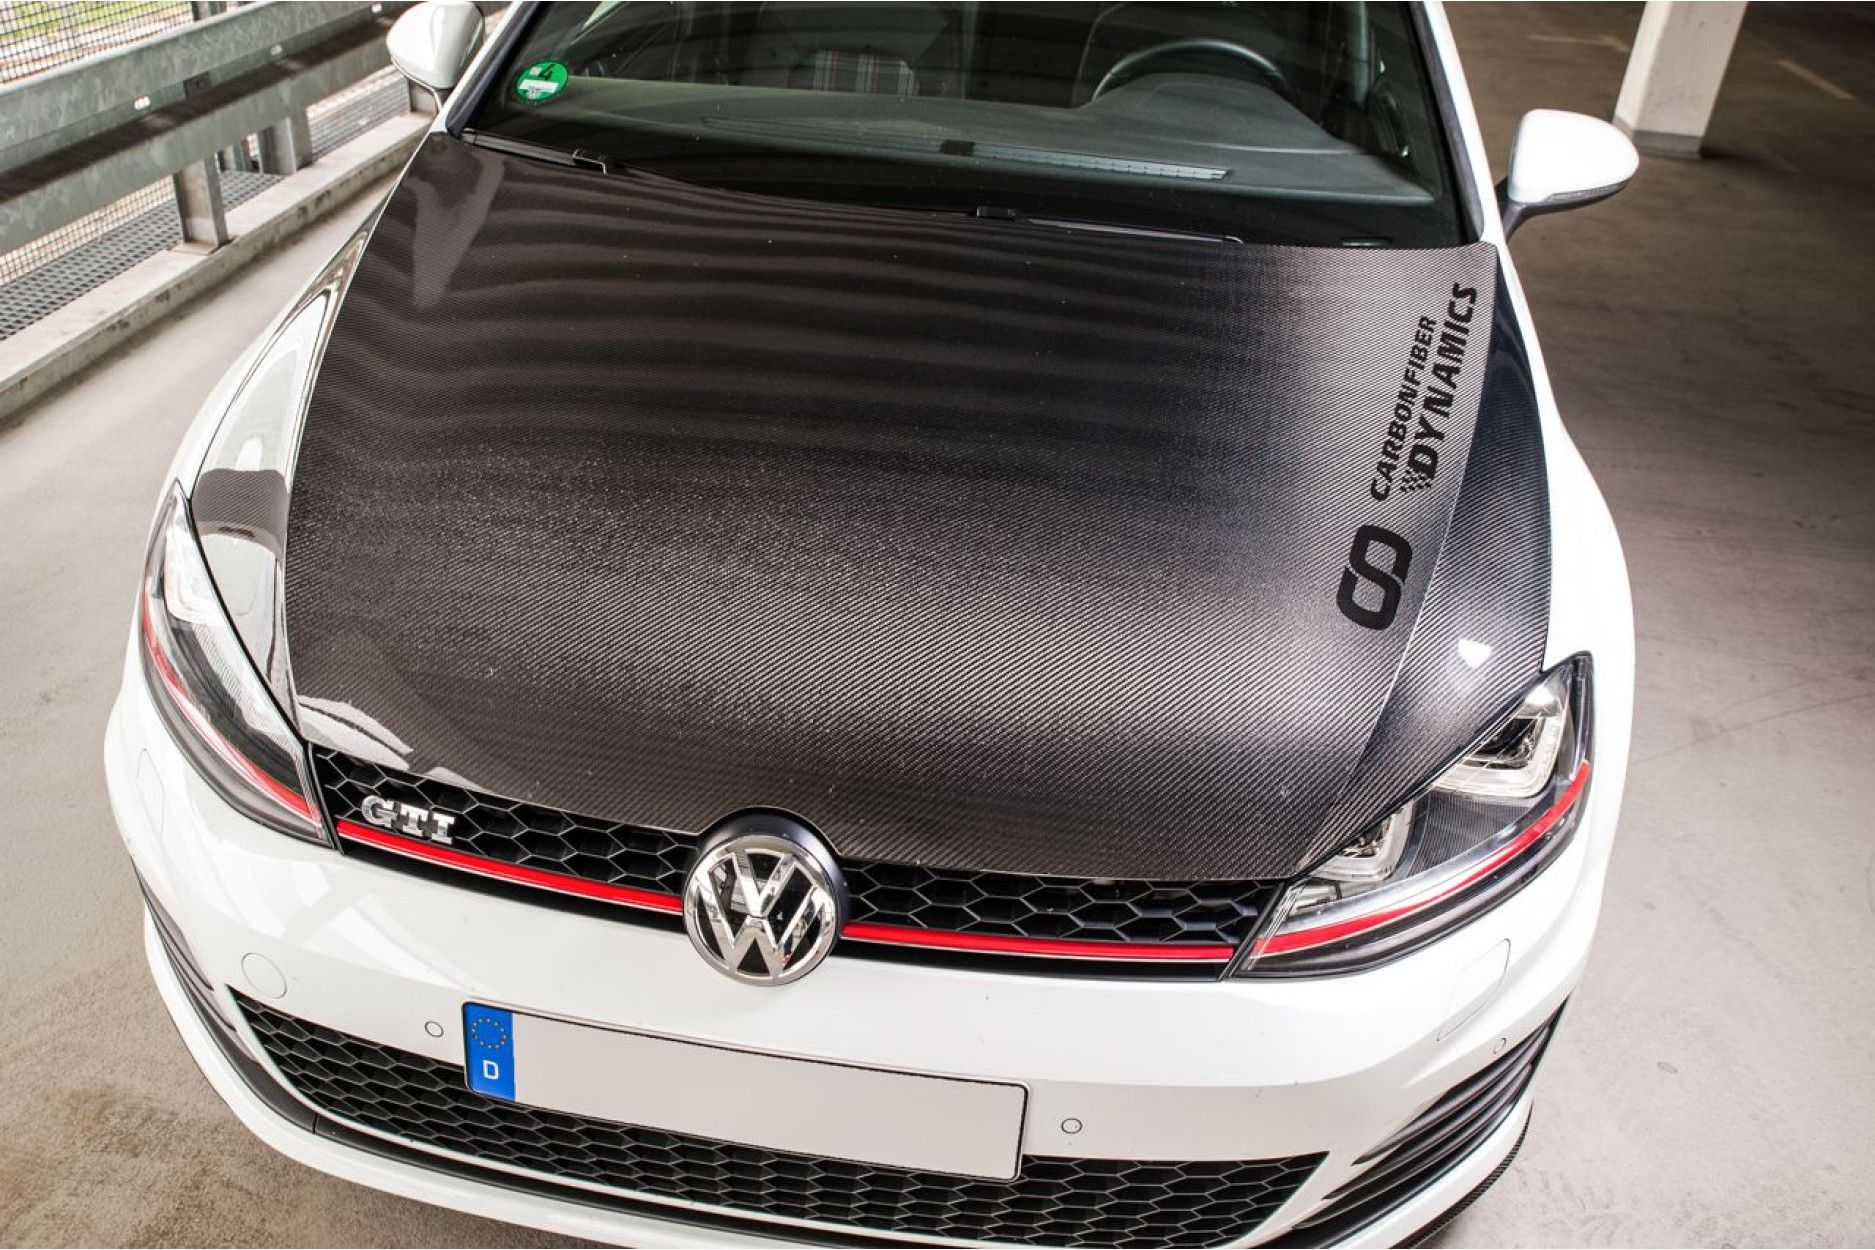 Boca Carbon Motorhaube für VW Golf 7 GTI - online kaufen bei CFD